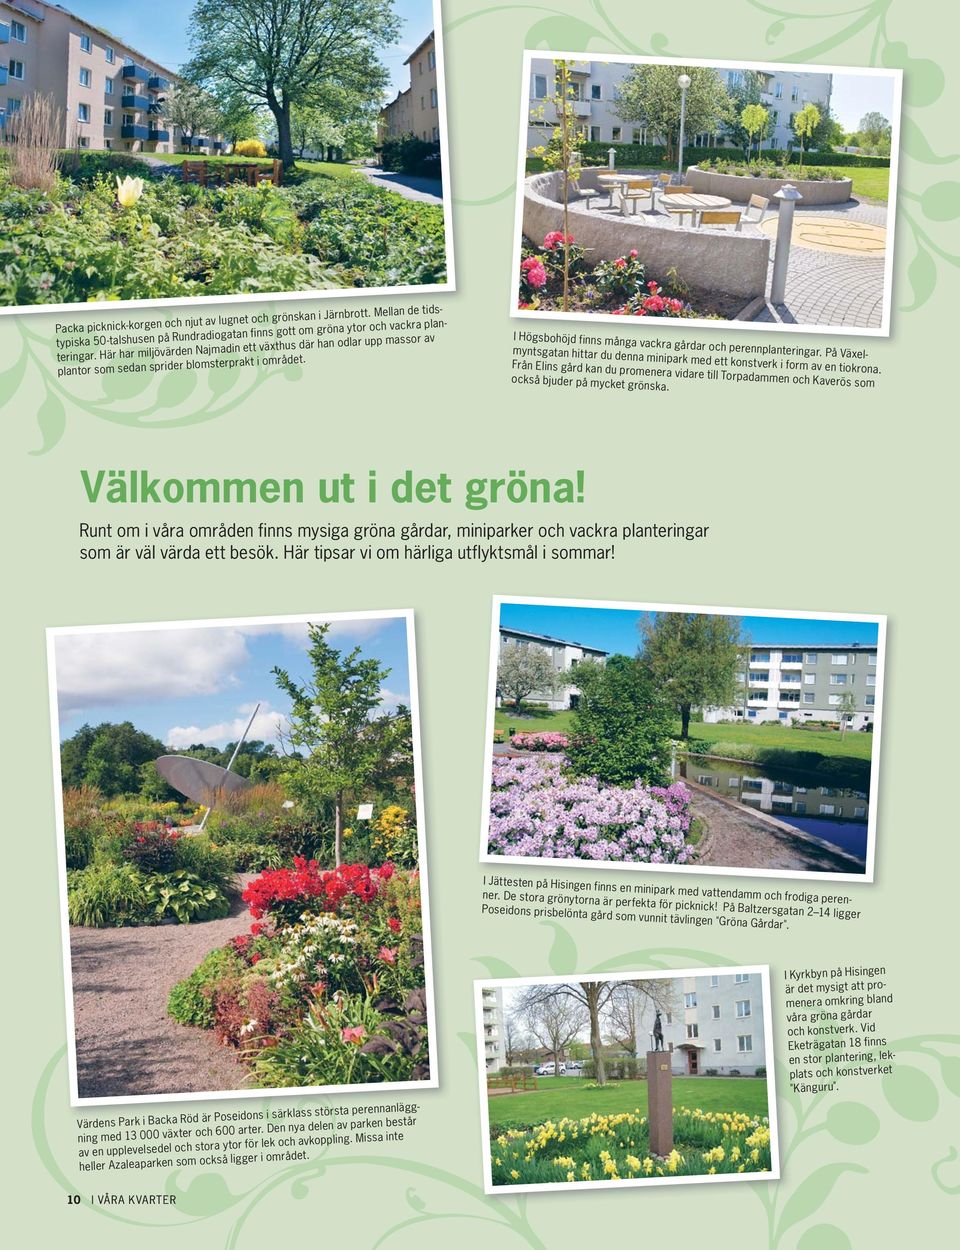 På Växelmyntsgatan hittar du denna minipark med ett konstverk i form av en tiokrona. Från Elins gård kan du promenera vidare till Torpadammen och Kaverös som också bjuder på mycket grönska.